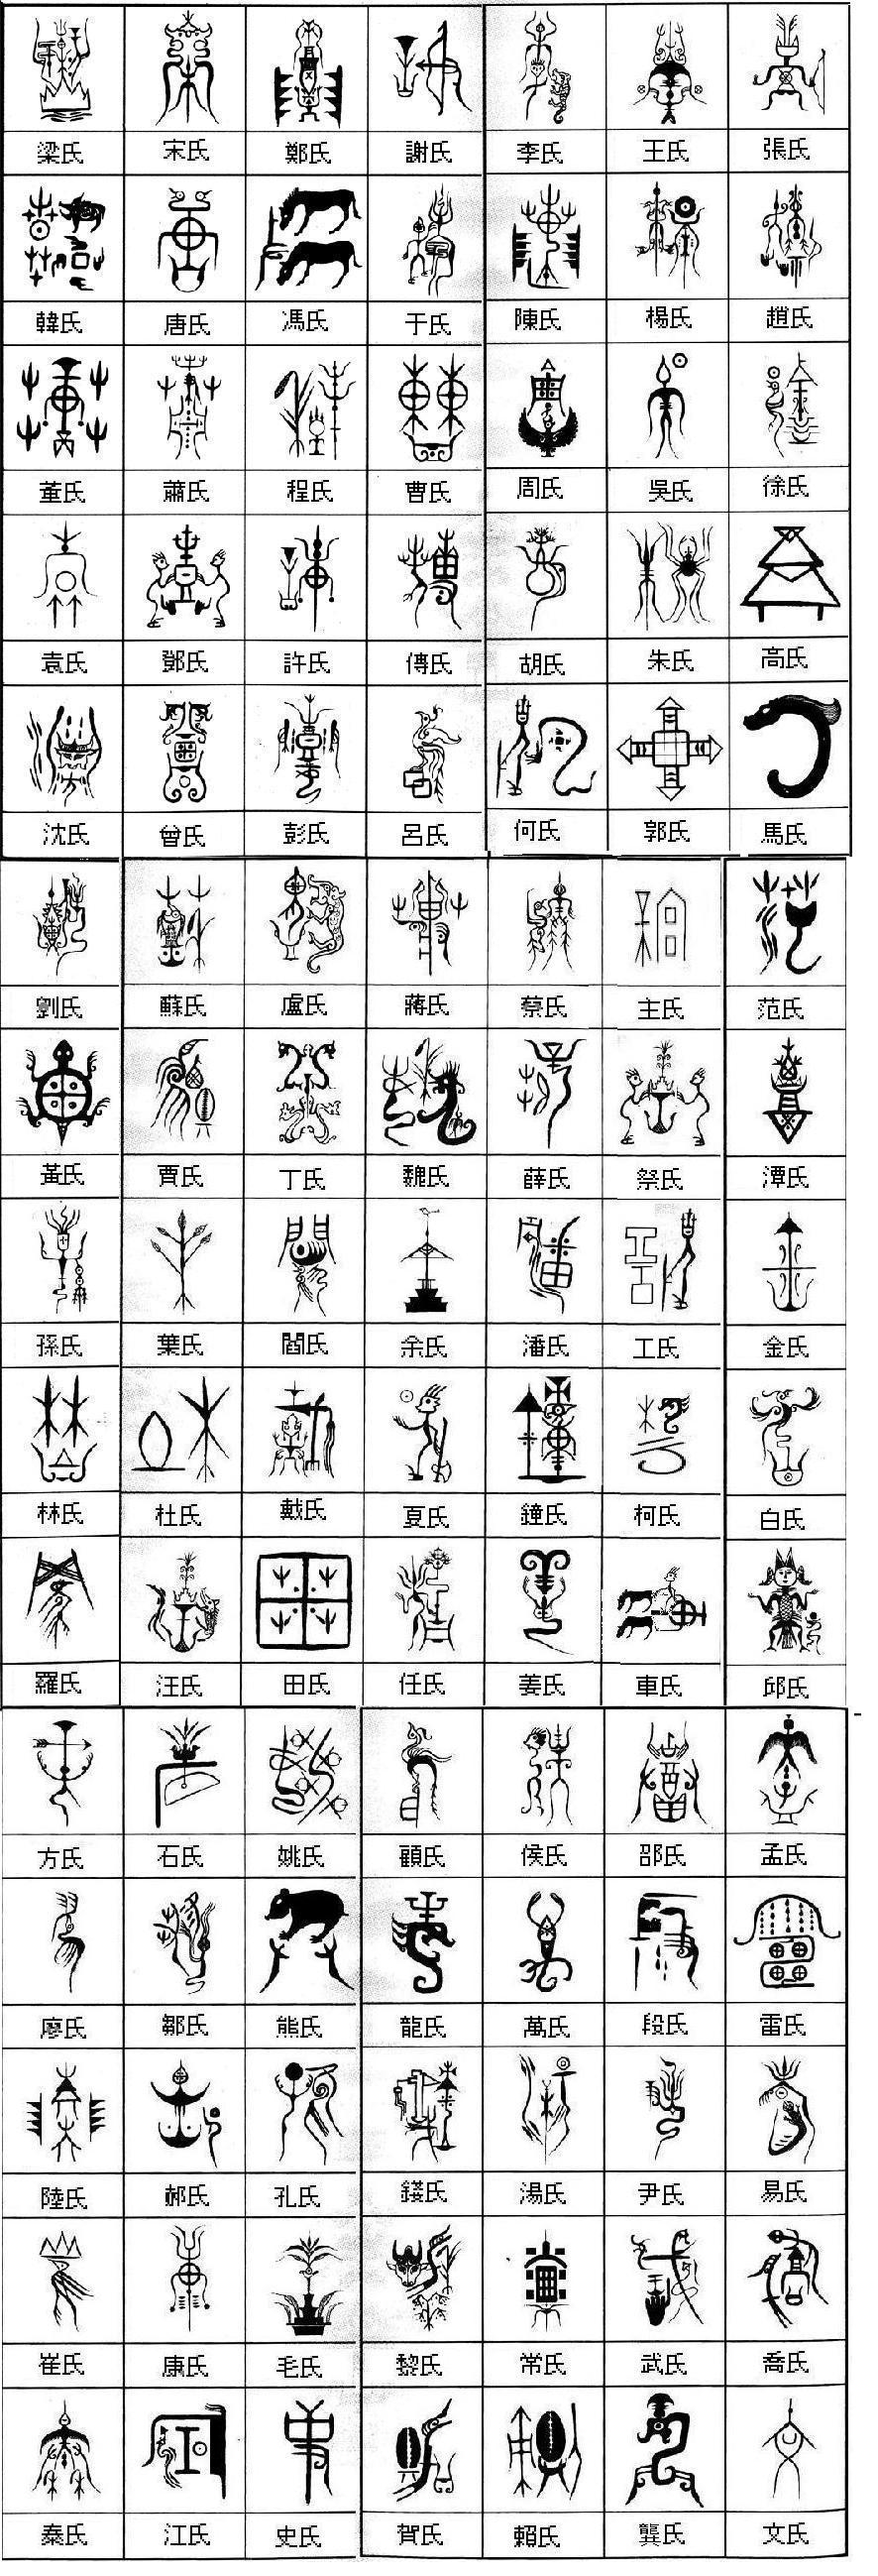 为什么中国古代的贵族氏族没有设立家徽的传统